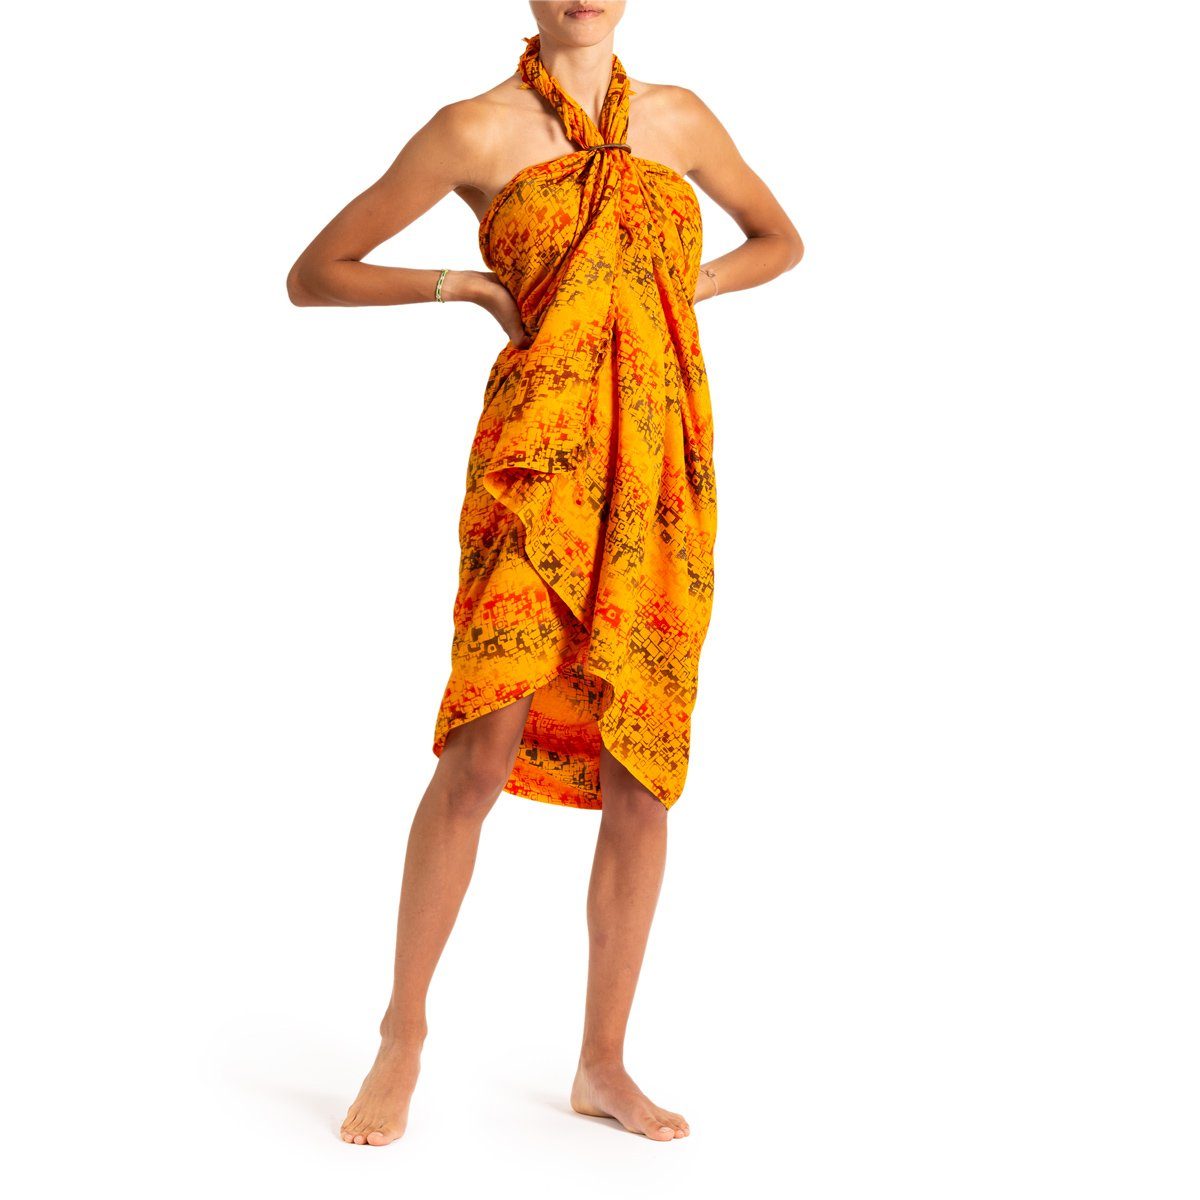 PANASIAM Pareo Sarong Wachsbatik Orangetöne aus hochwertiger Viskose Strandtuch, Strandkleid Bikini Cover-up Tuch für den Strand Schultertuch Halstuch B302 orange square